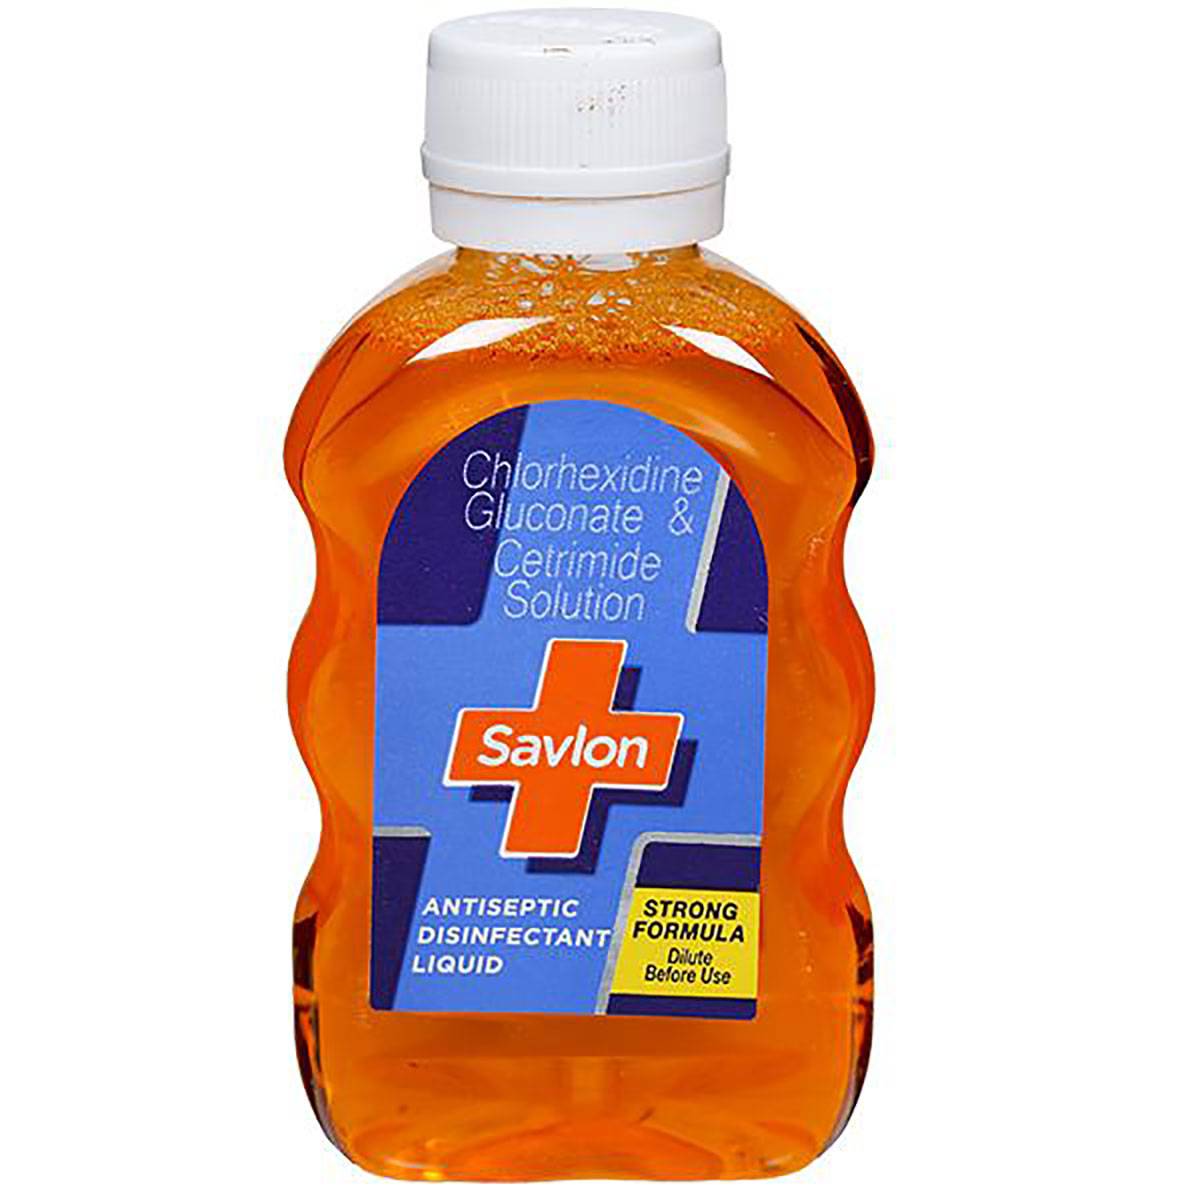 Savlon Antiseptic Disinfectant Liquid 100ml